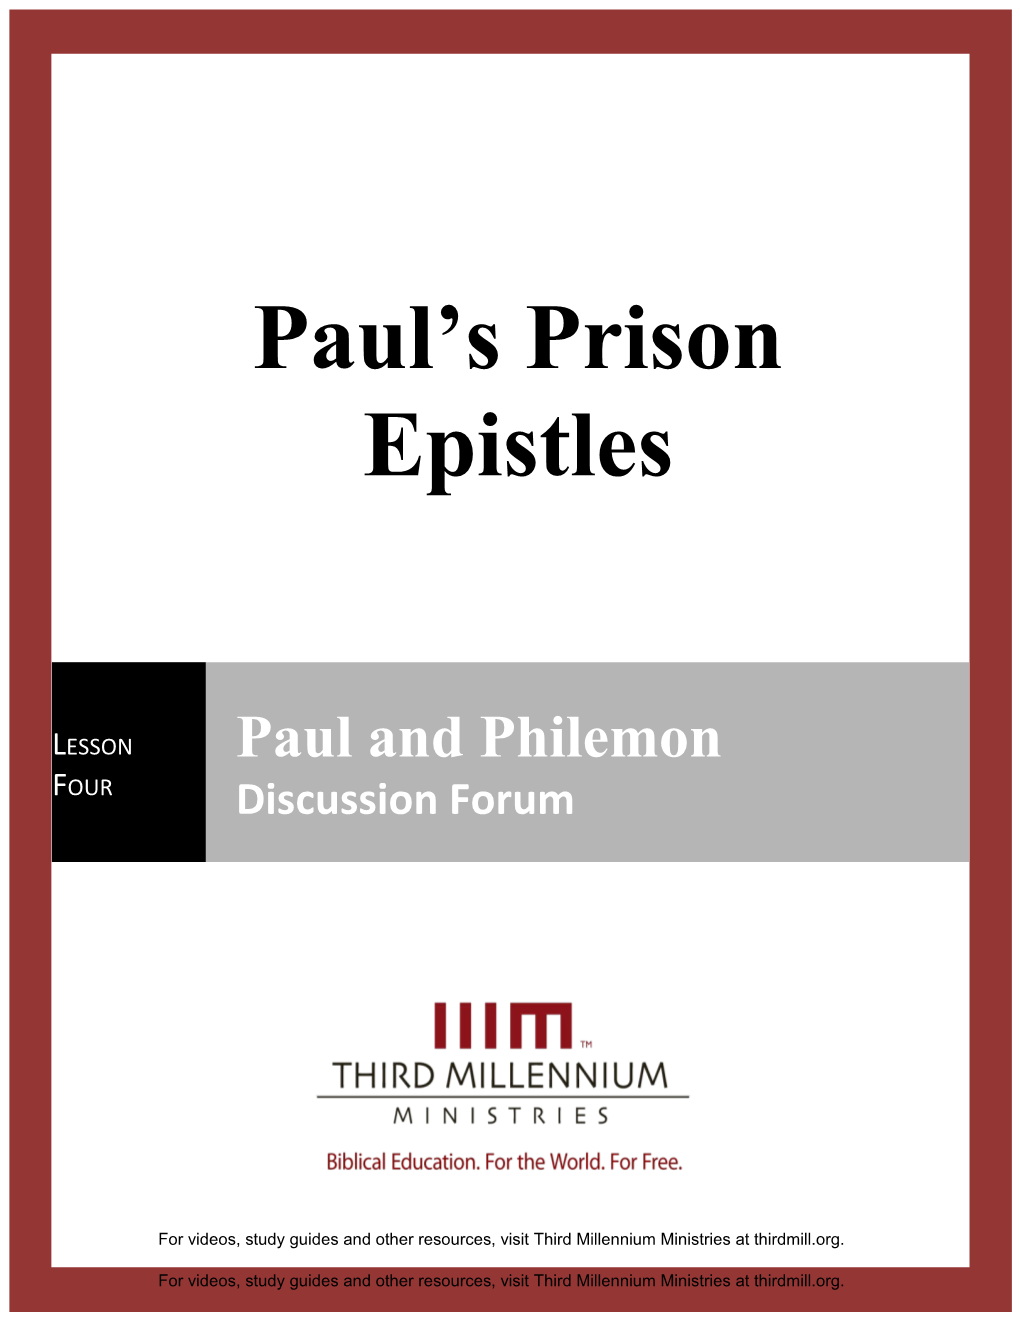 Paul's Prison Epistles Lesson 4 Discussion Forum